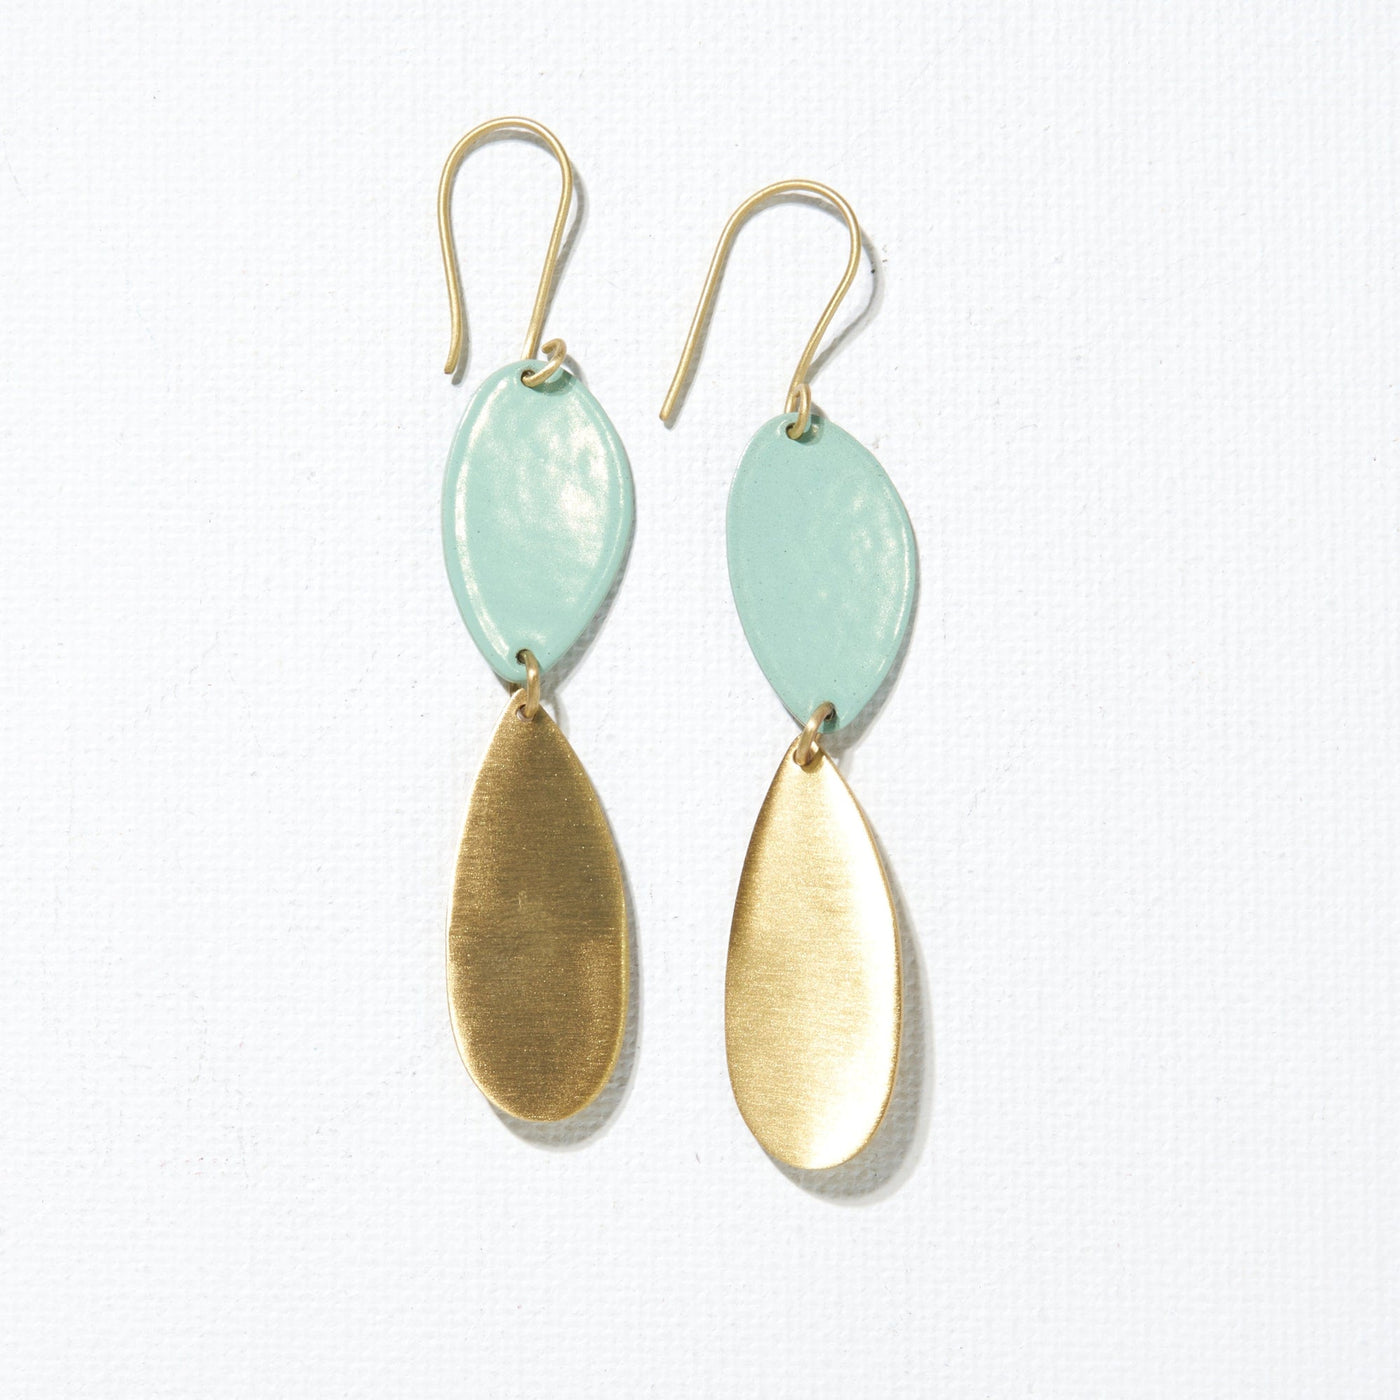 Mint and Brass Double Drop Earrings